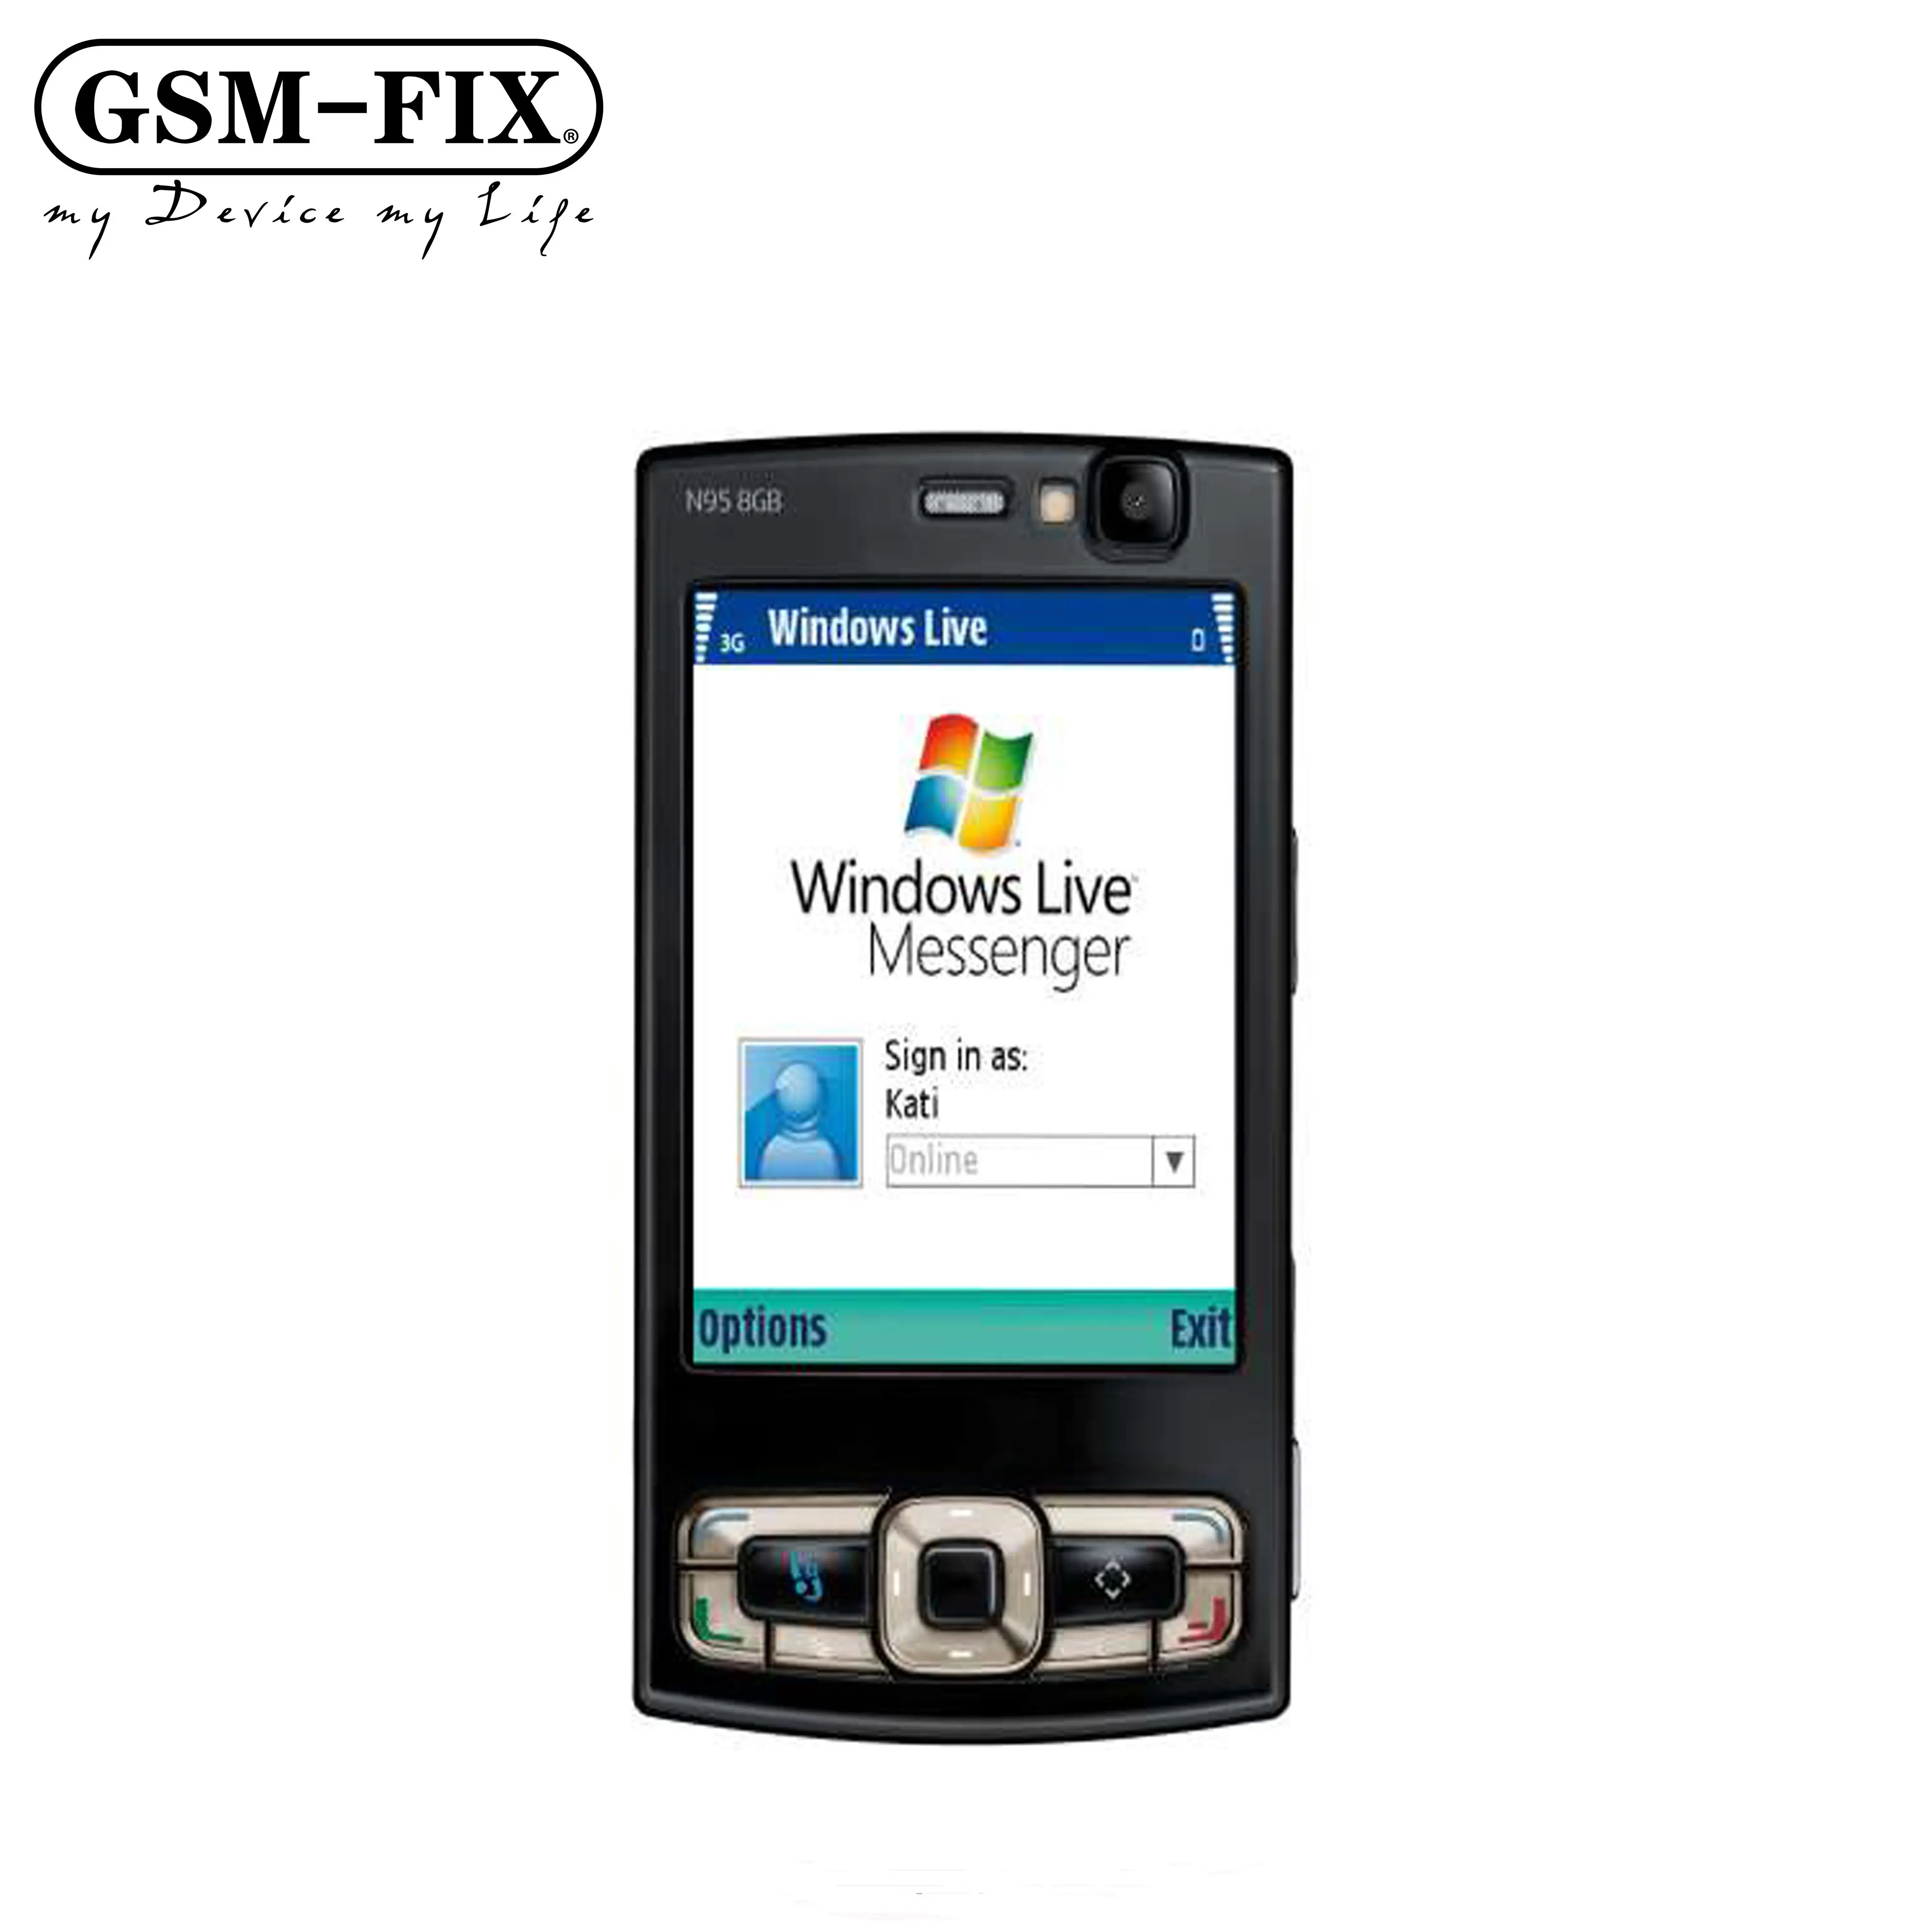 GSM-FIX toptan düşük fiyat orijinal cep telefonu Nokia N95 için Unlocked 3G slayt cep telefonu